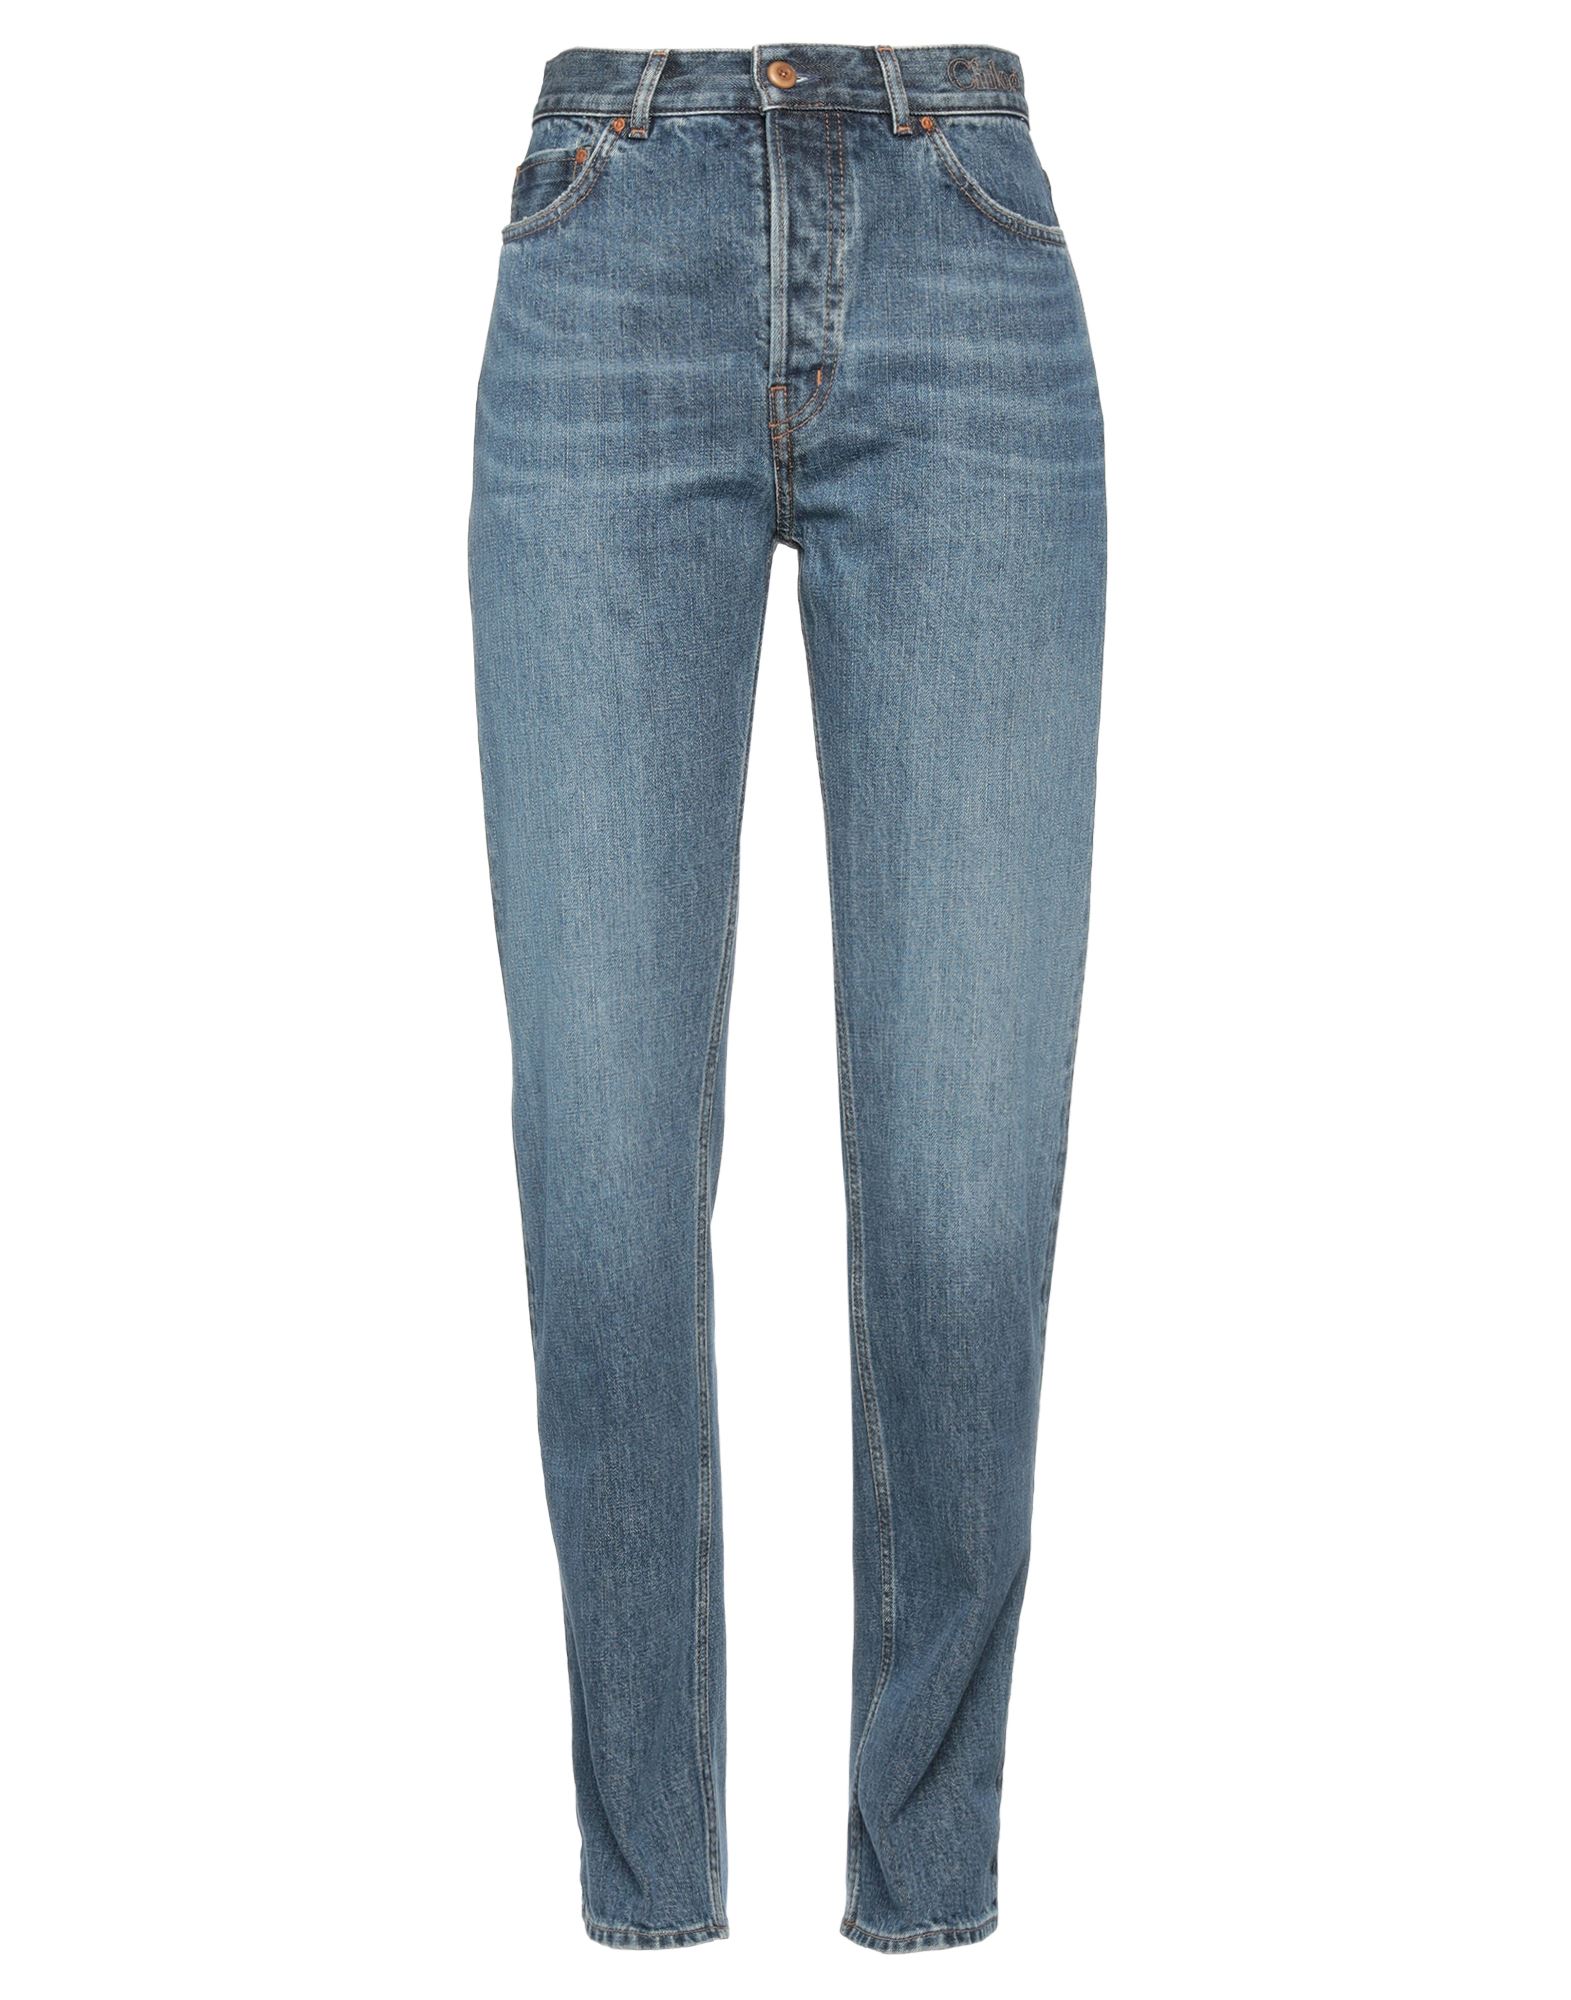 Shop Chloé Woman Jeans Blue Size 29w-29l Cotton